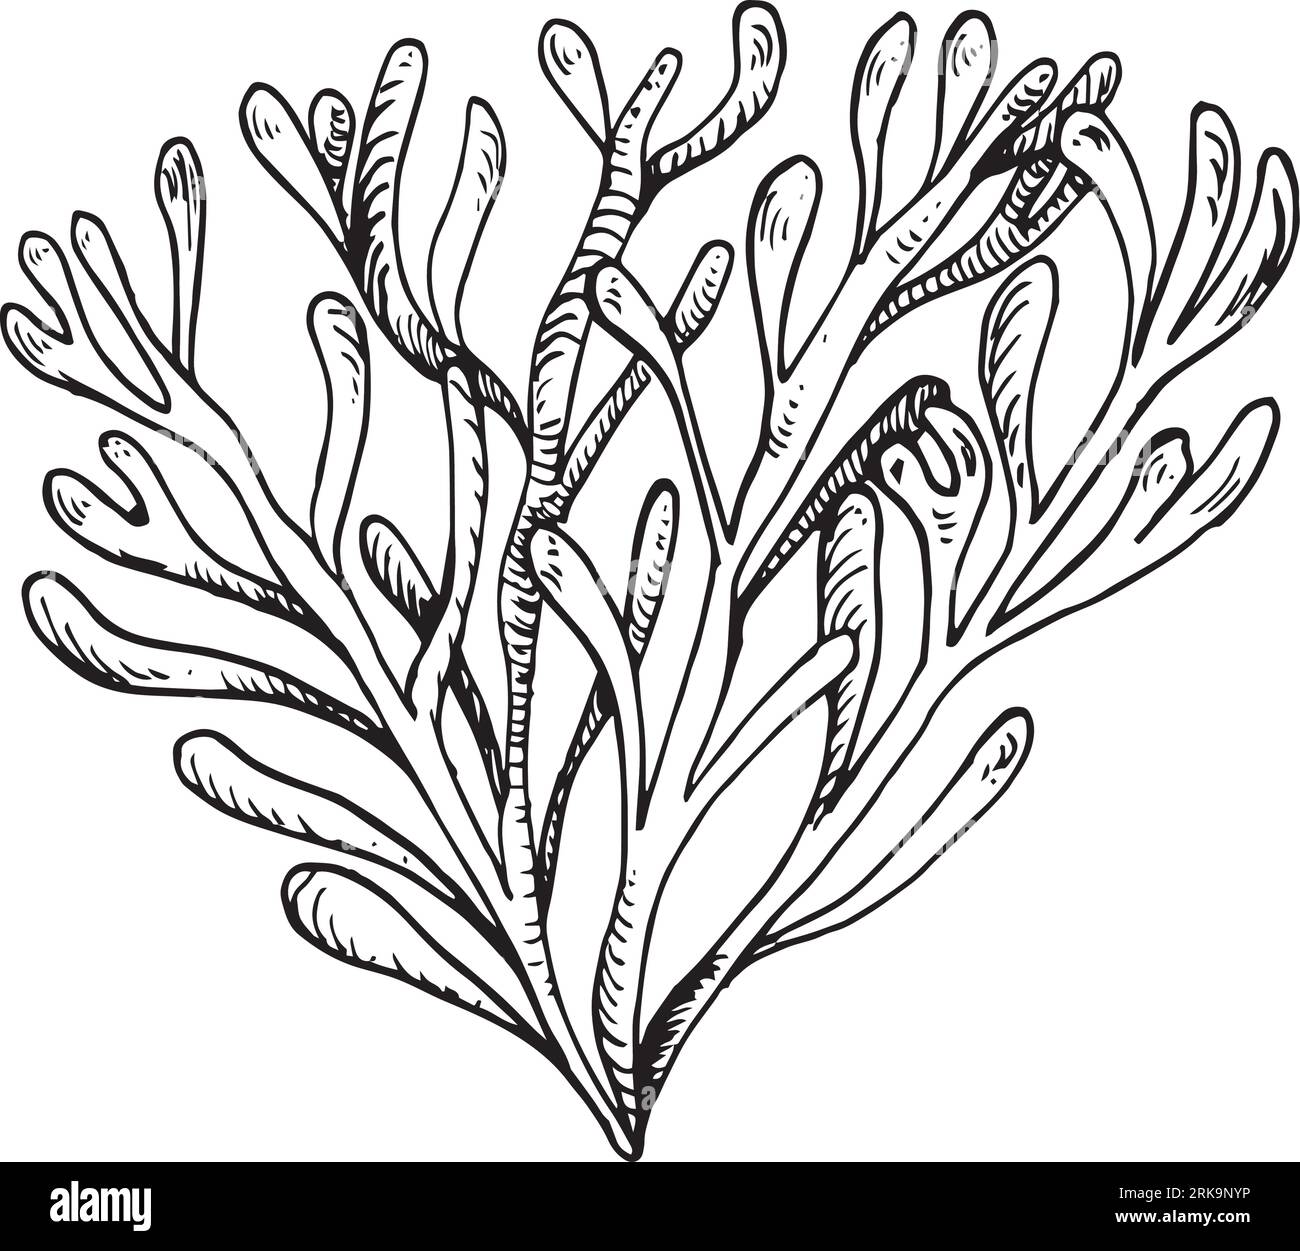 Illustrazione disegnata a mano con inchiostro di piante marine isolata su sfondo bianco. Agar rosa singolo, alghe, vettore di linea bianca nera di fillofora. Elemento di progettazione Illustrazione Vettoriale